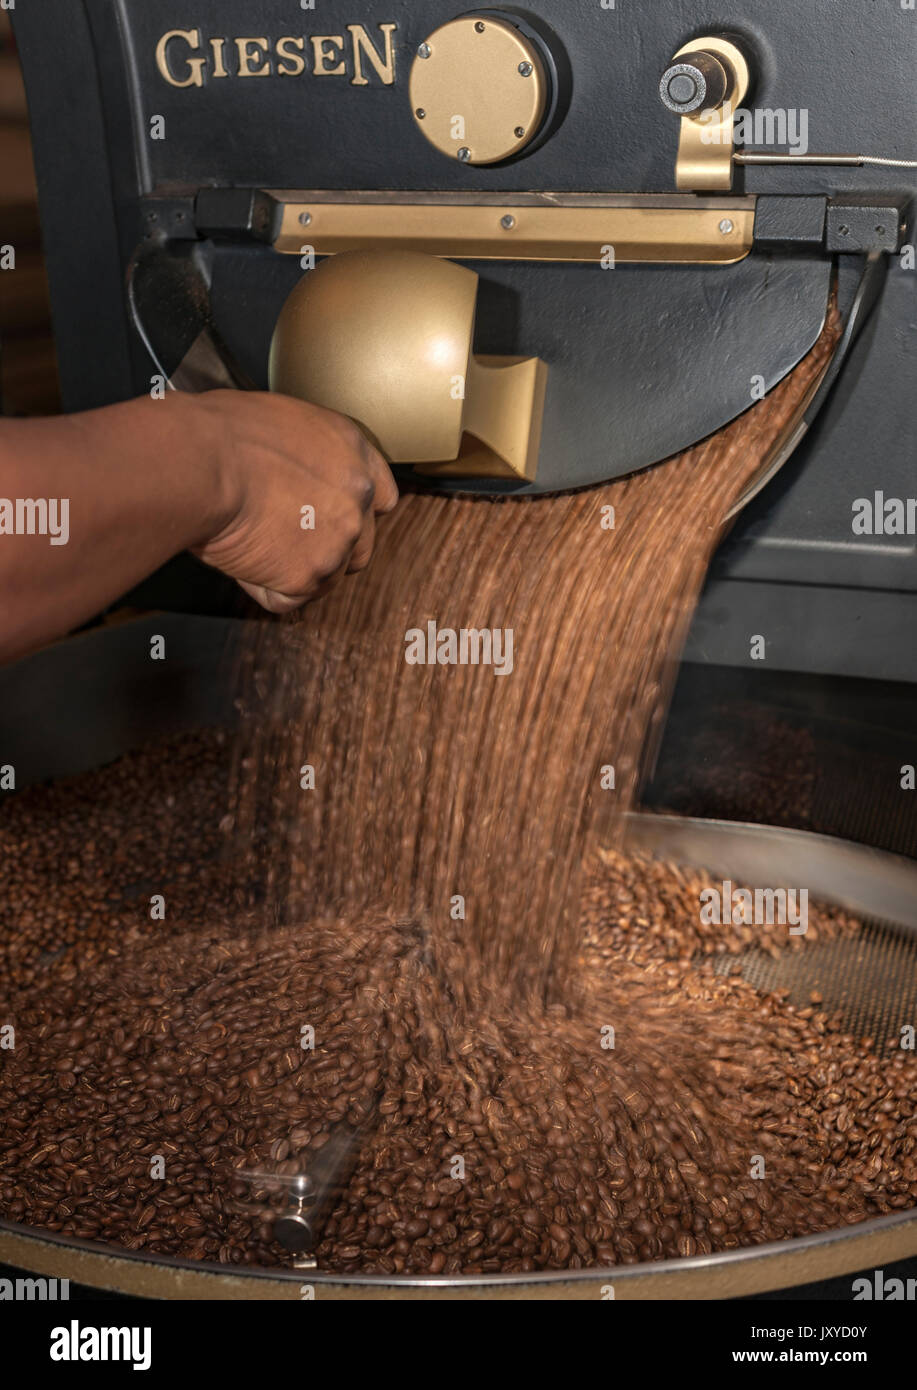 Giesen coffee roasting machine. Stock Photo